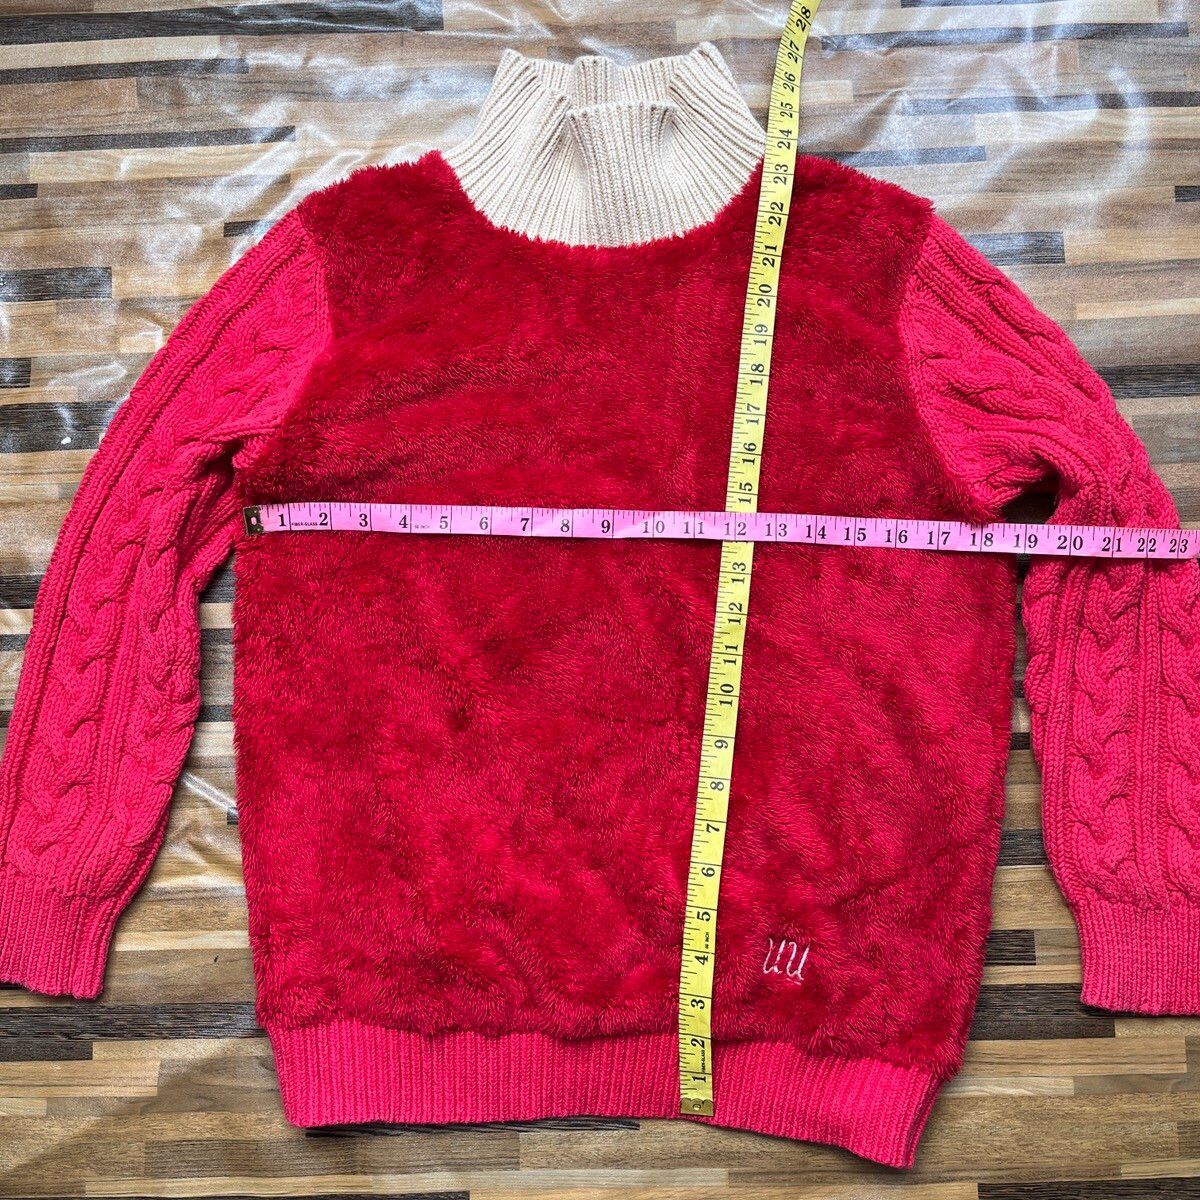 Undercover X Uniqlo Sweater Rare Red Colour - 6